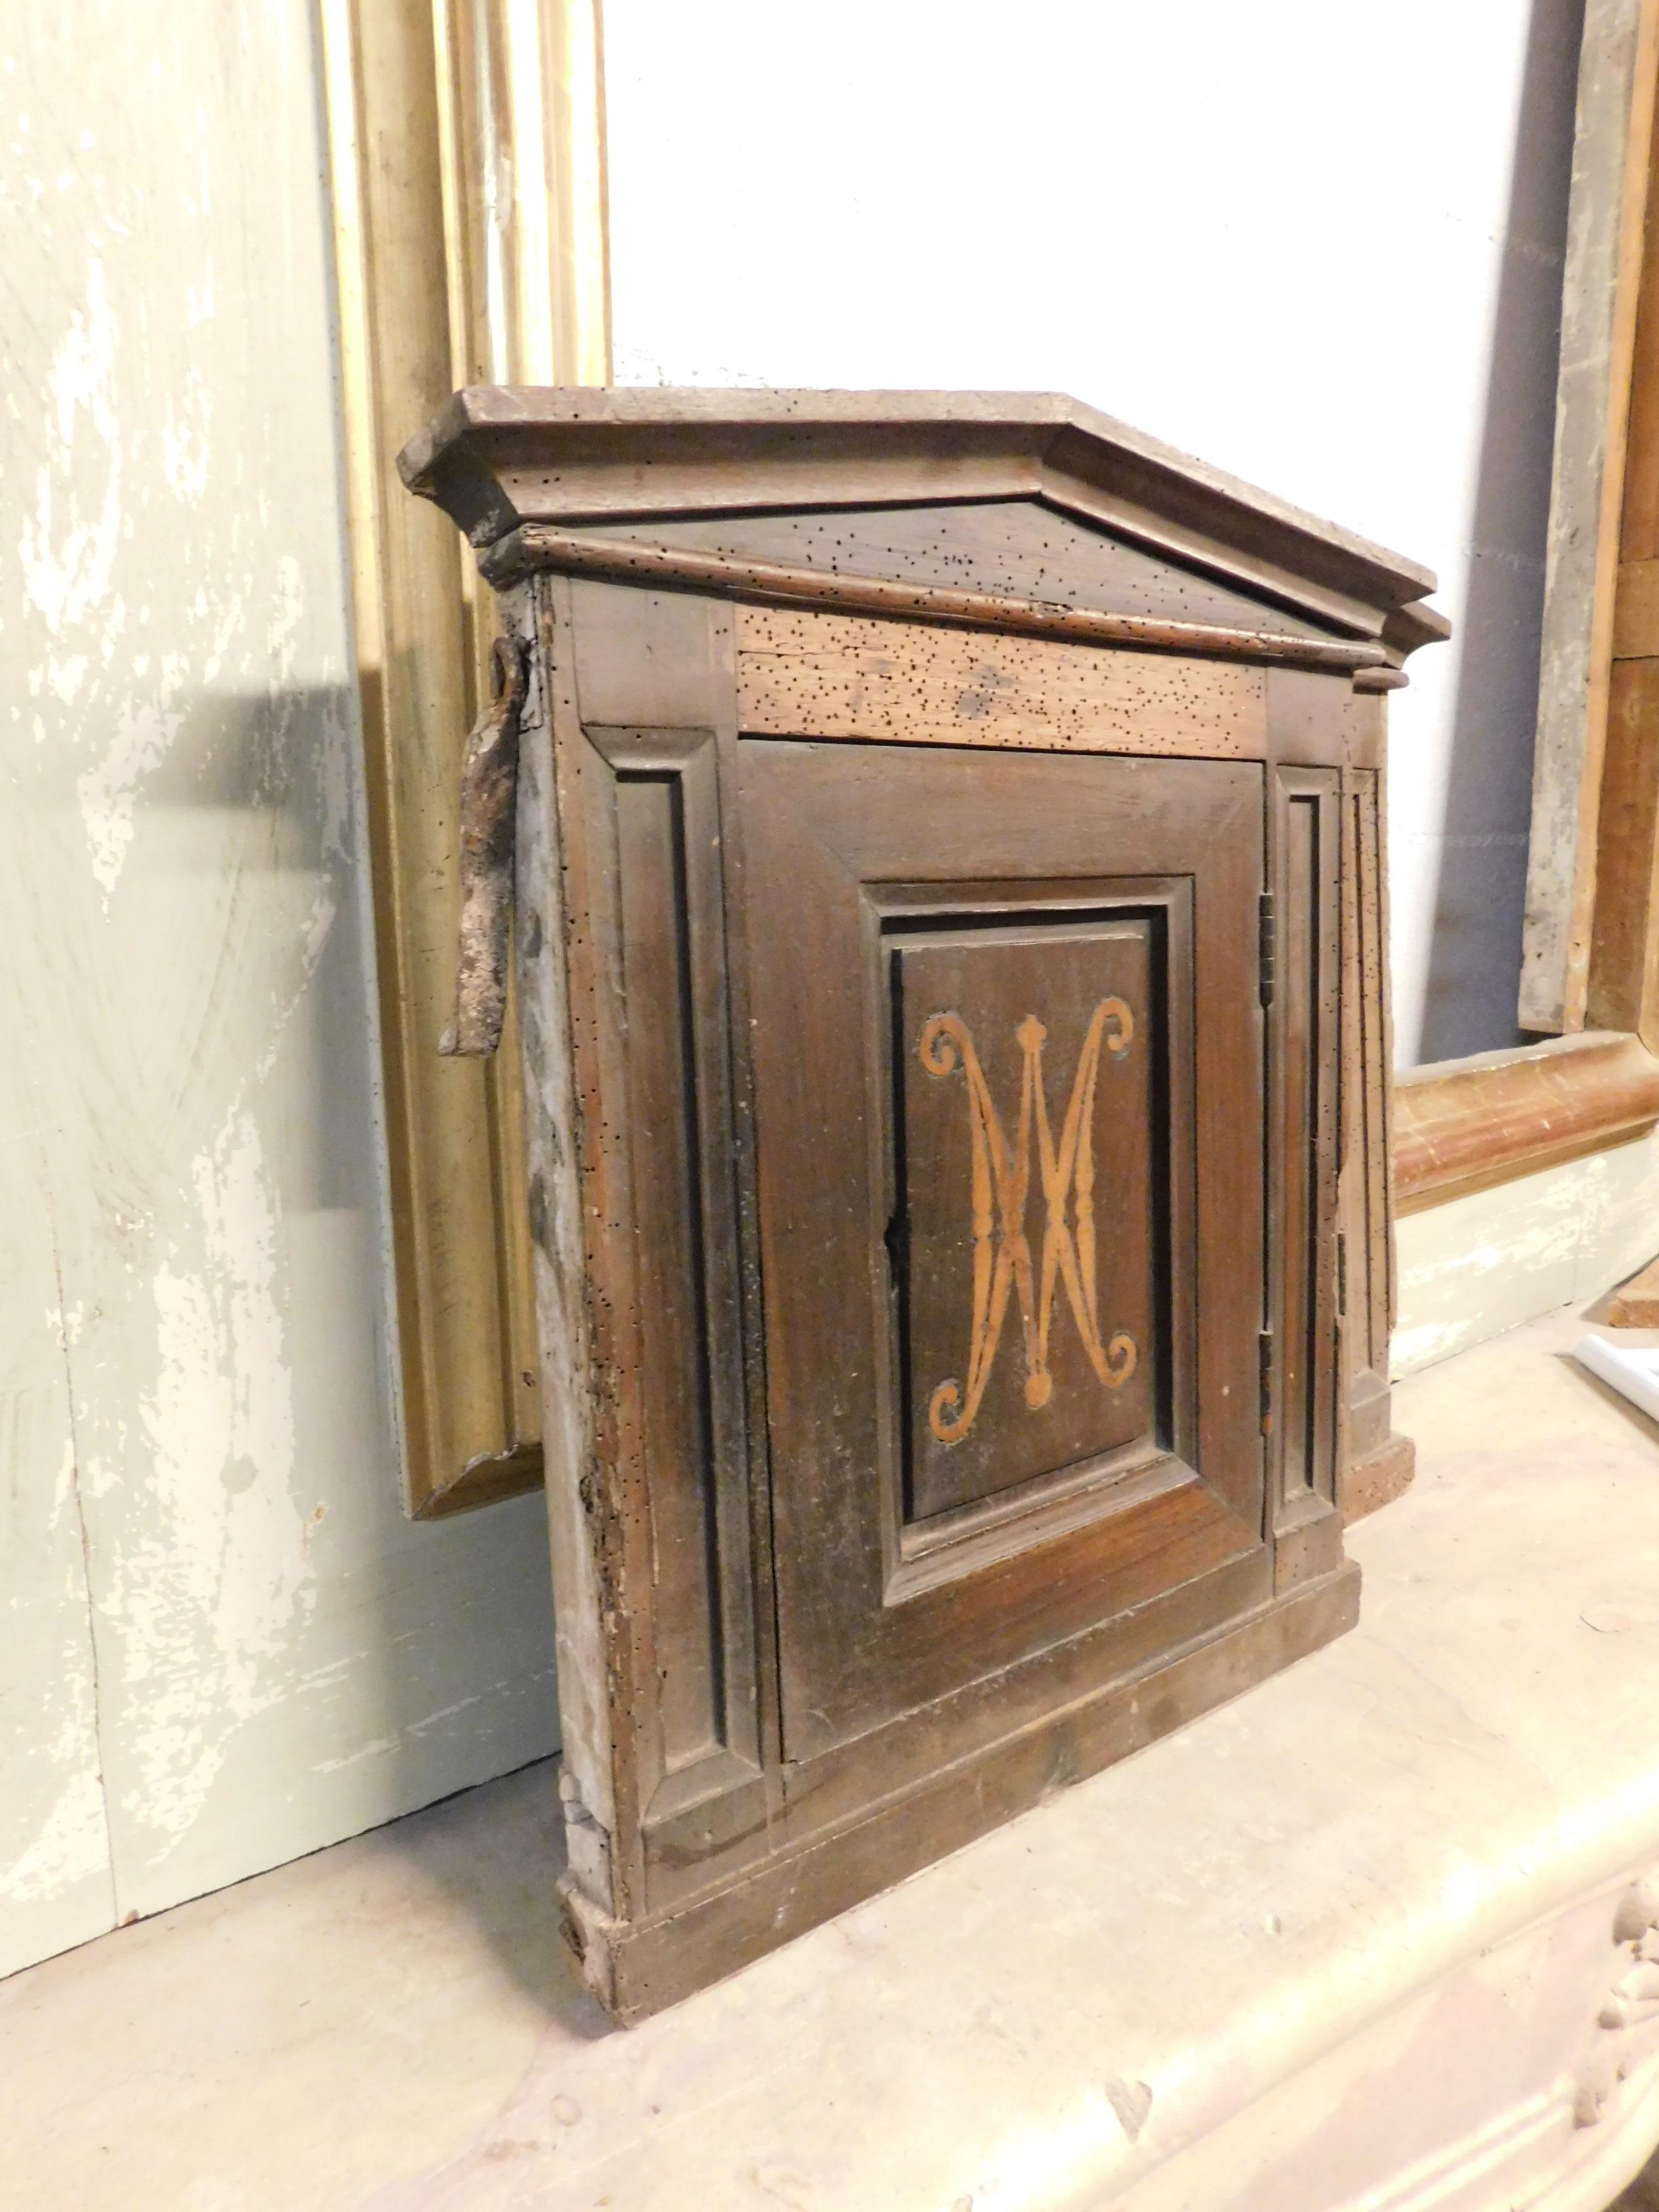 paire de tabernacle en bois ancien du 16ème siècle avec tympan et incrustations, pouvant devenir des portes d'armoires ou de placards.